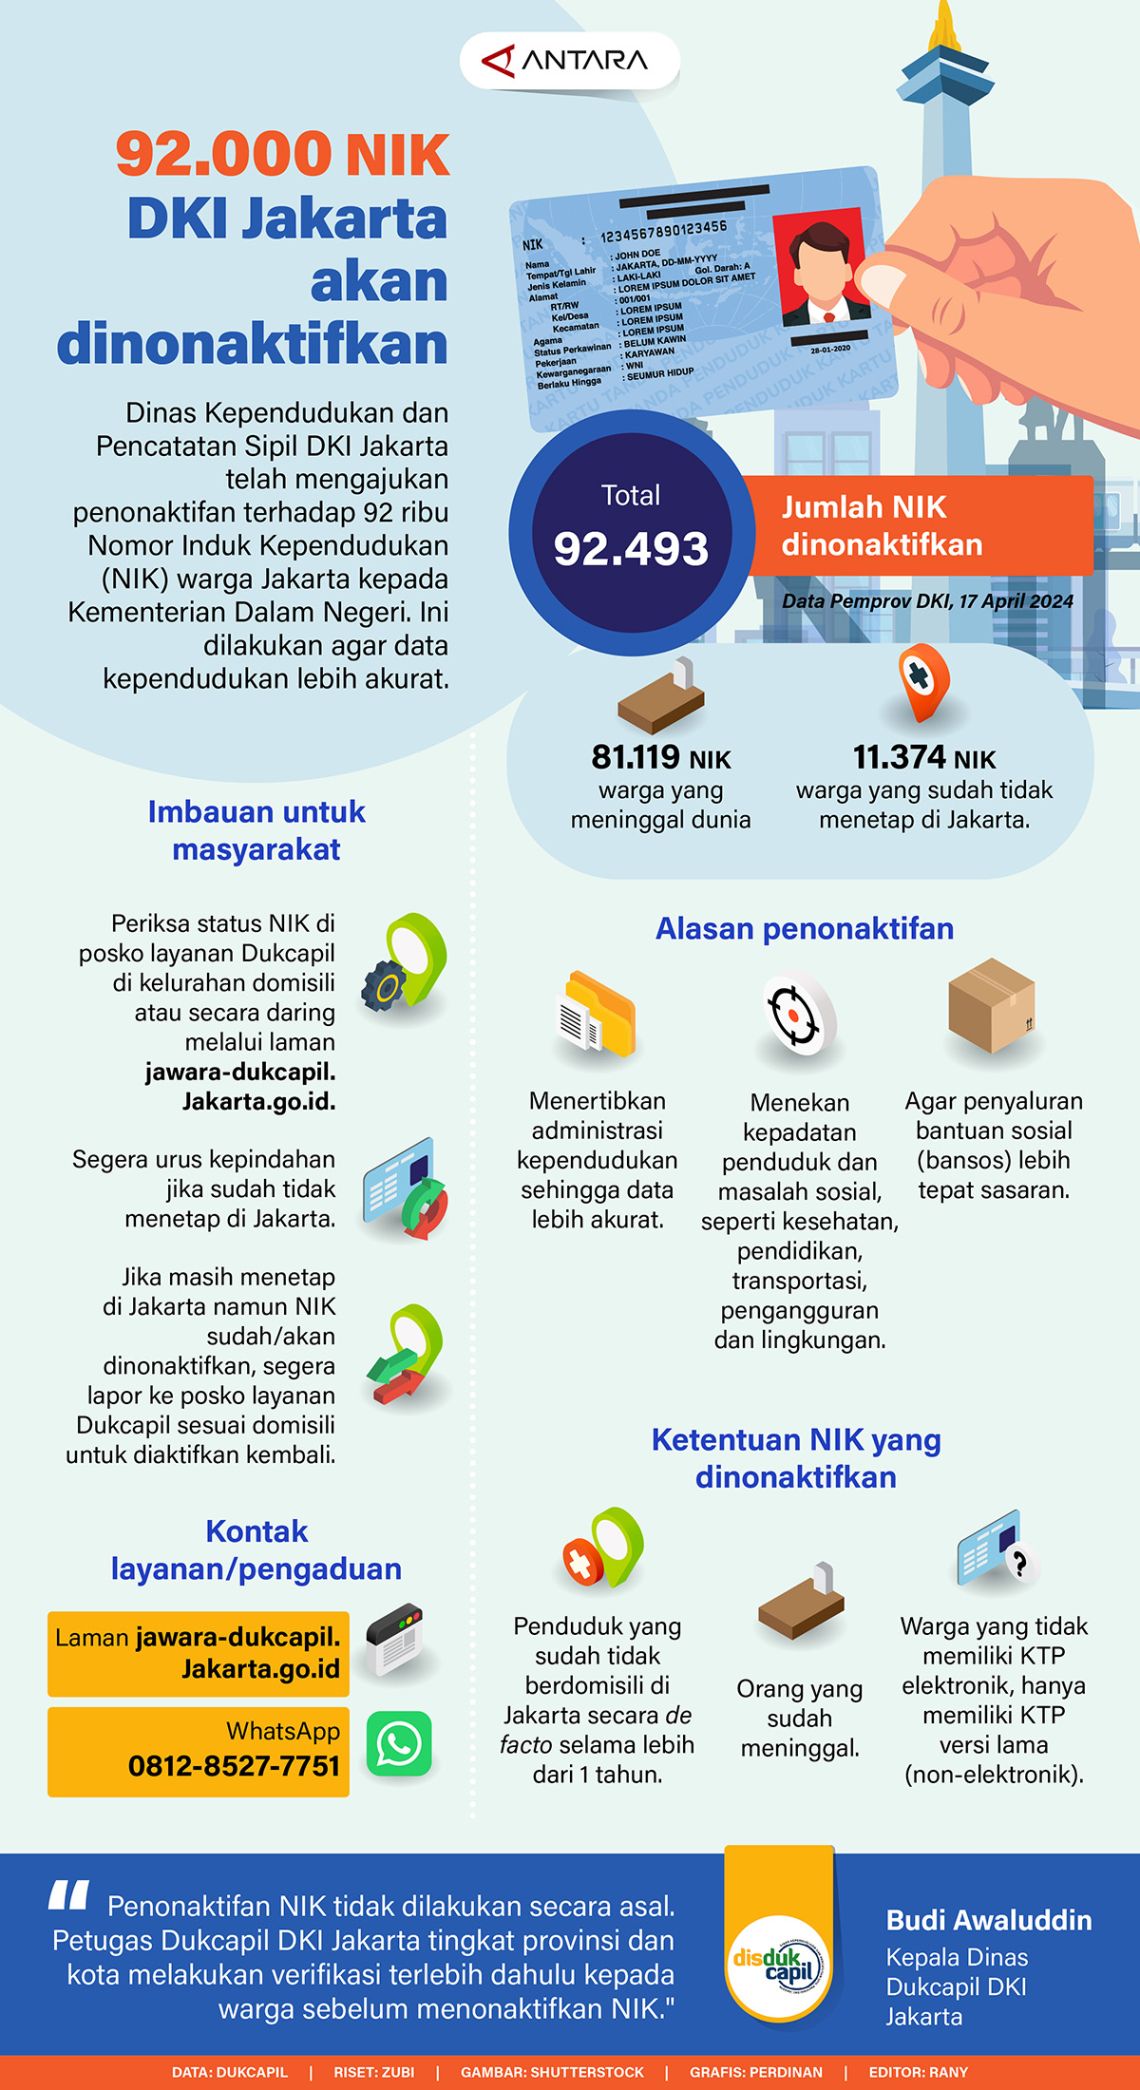 Sebanyak 92.000 NIK DKI Jakarta akan dinonaktifkan